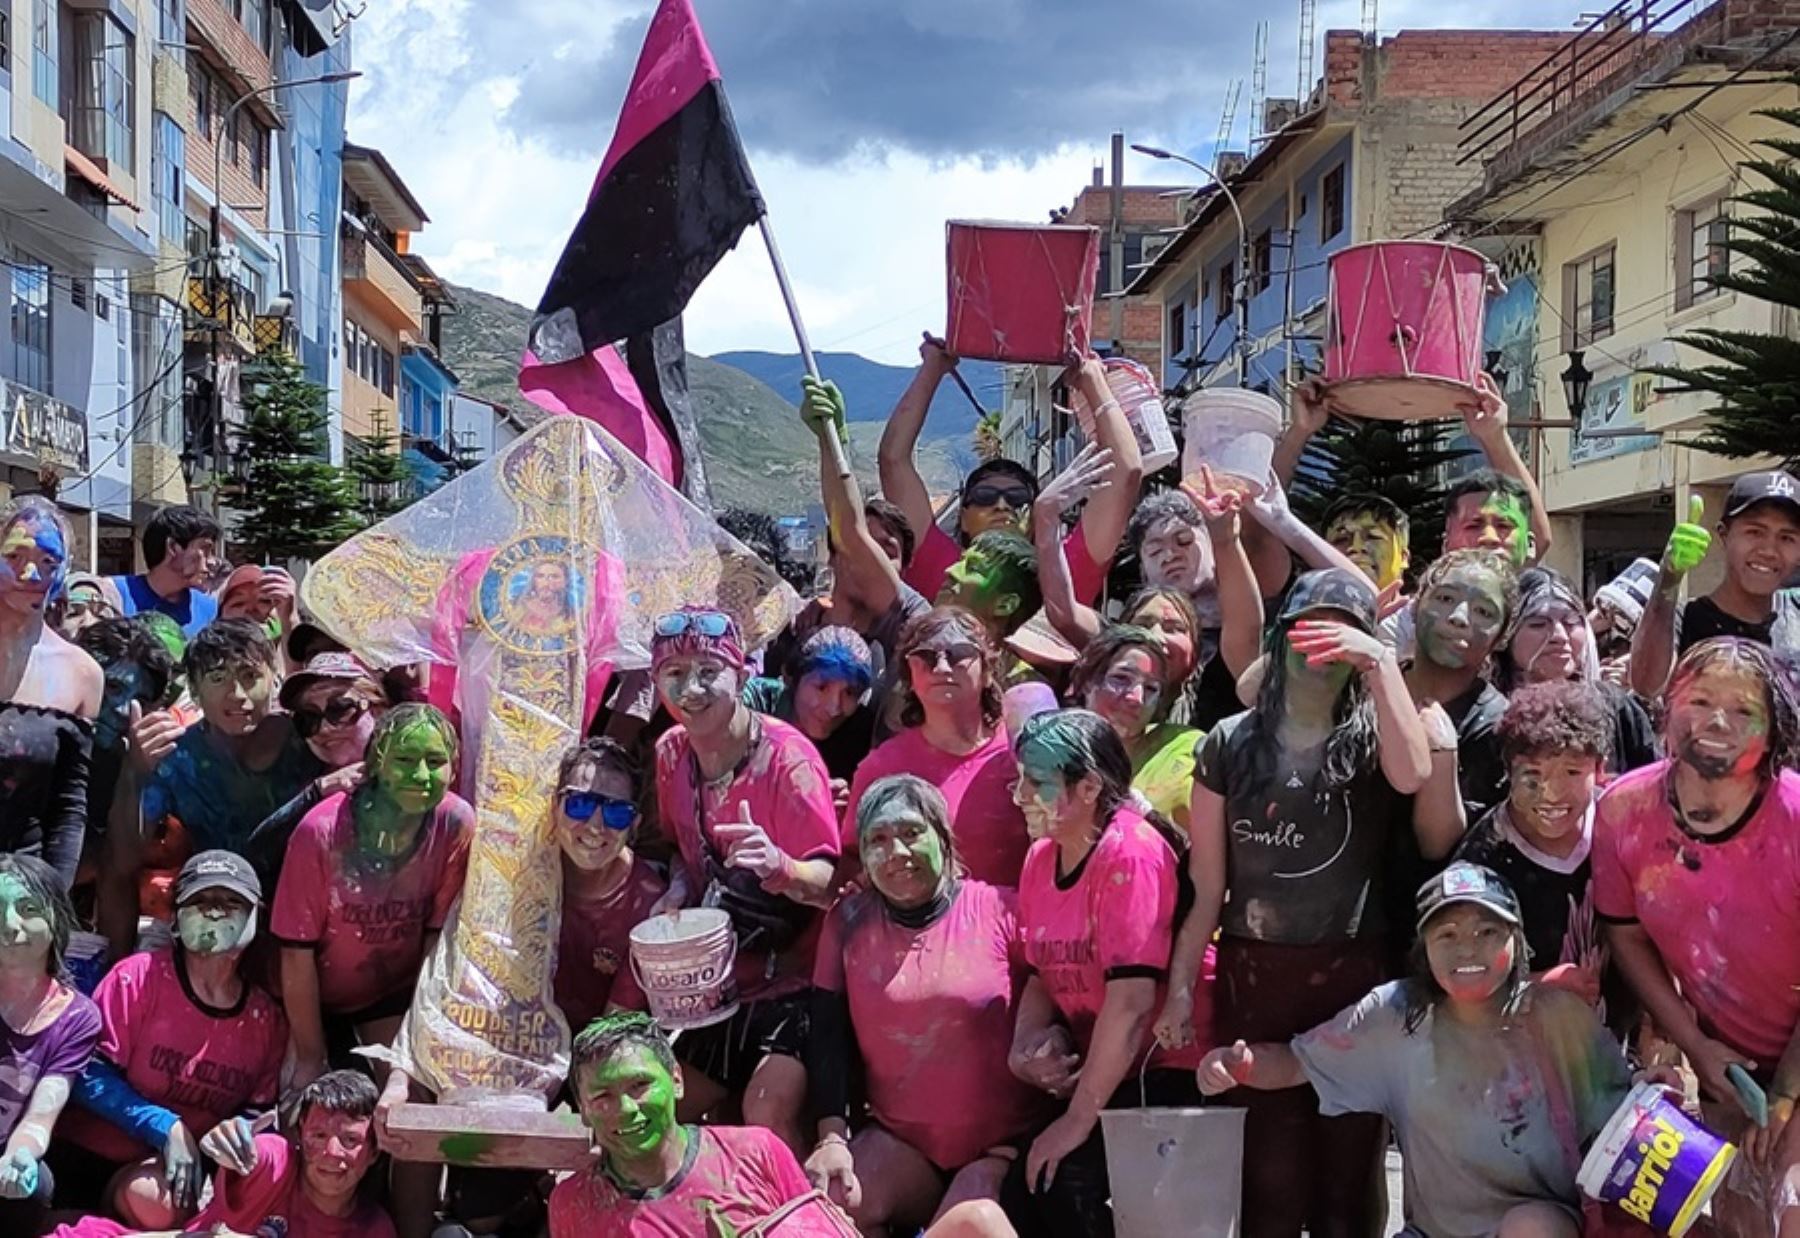 La capital de la región Áncash se apresta a celebrar, en un ambiente de desbordante frenesí y colorido, su icónico Carnaval Huaracino, una de las más multitudinarias celebraciones de su calendario festivo.